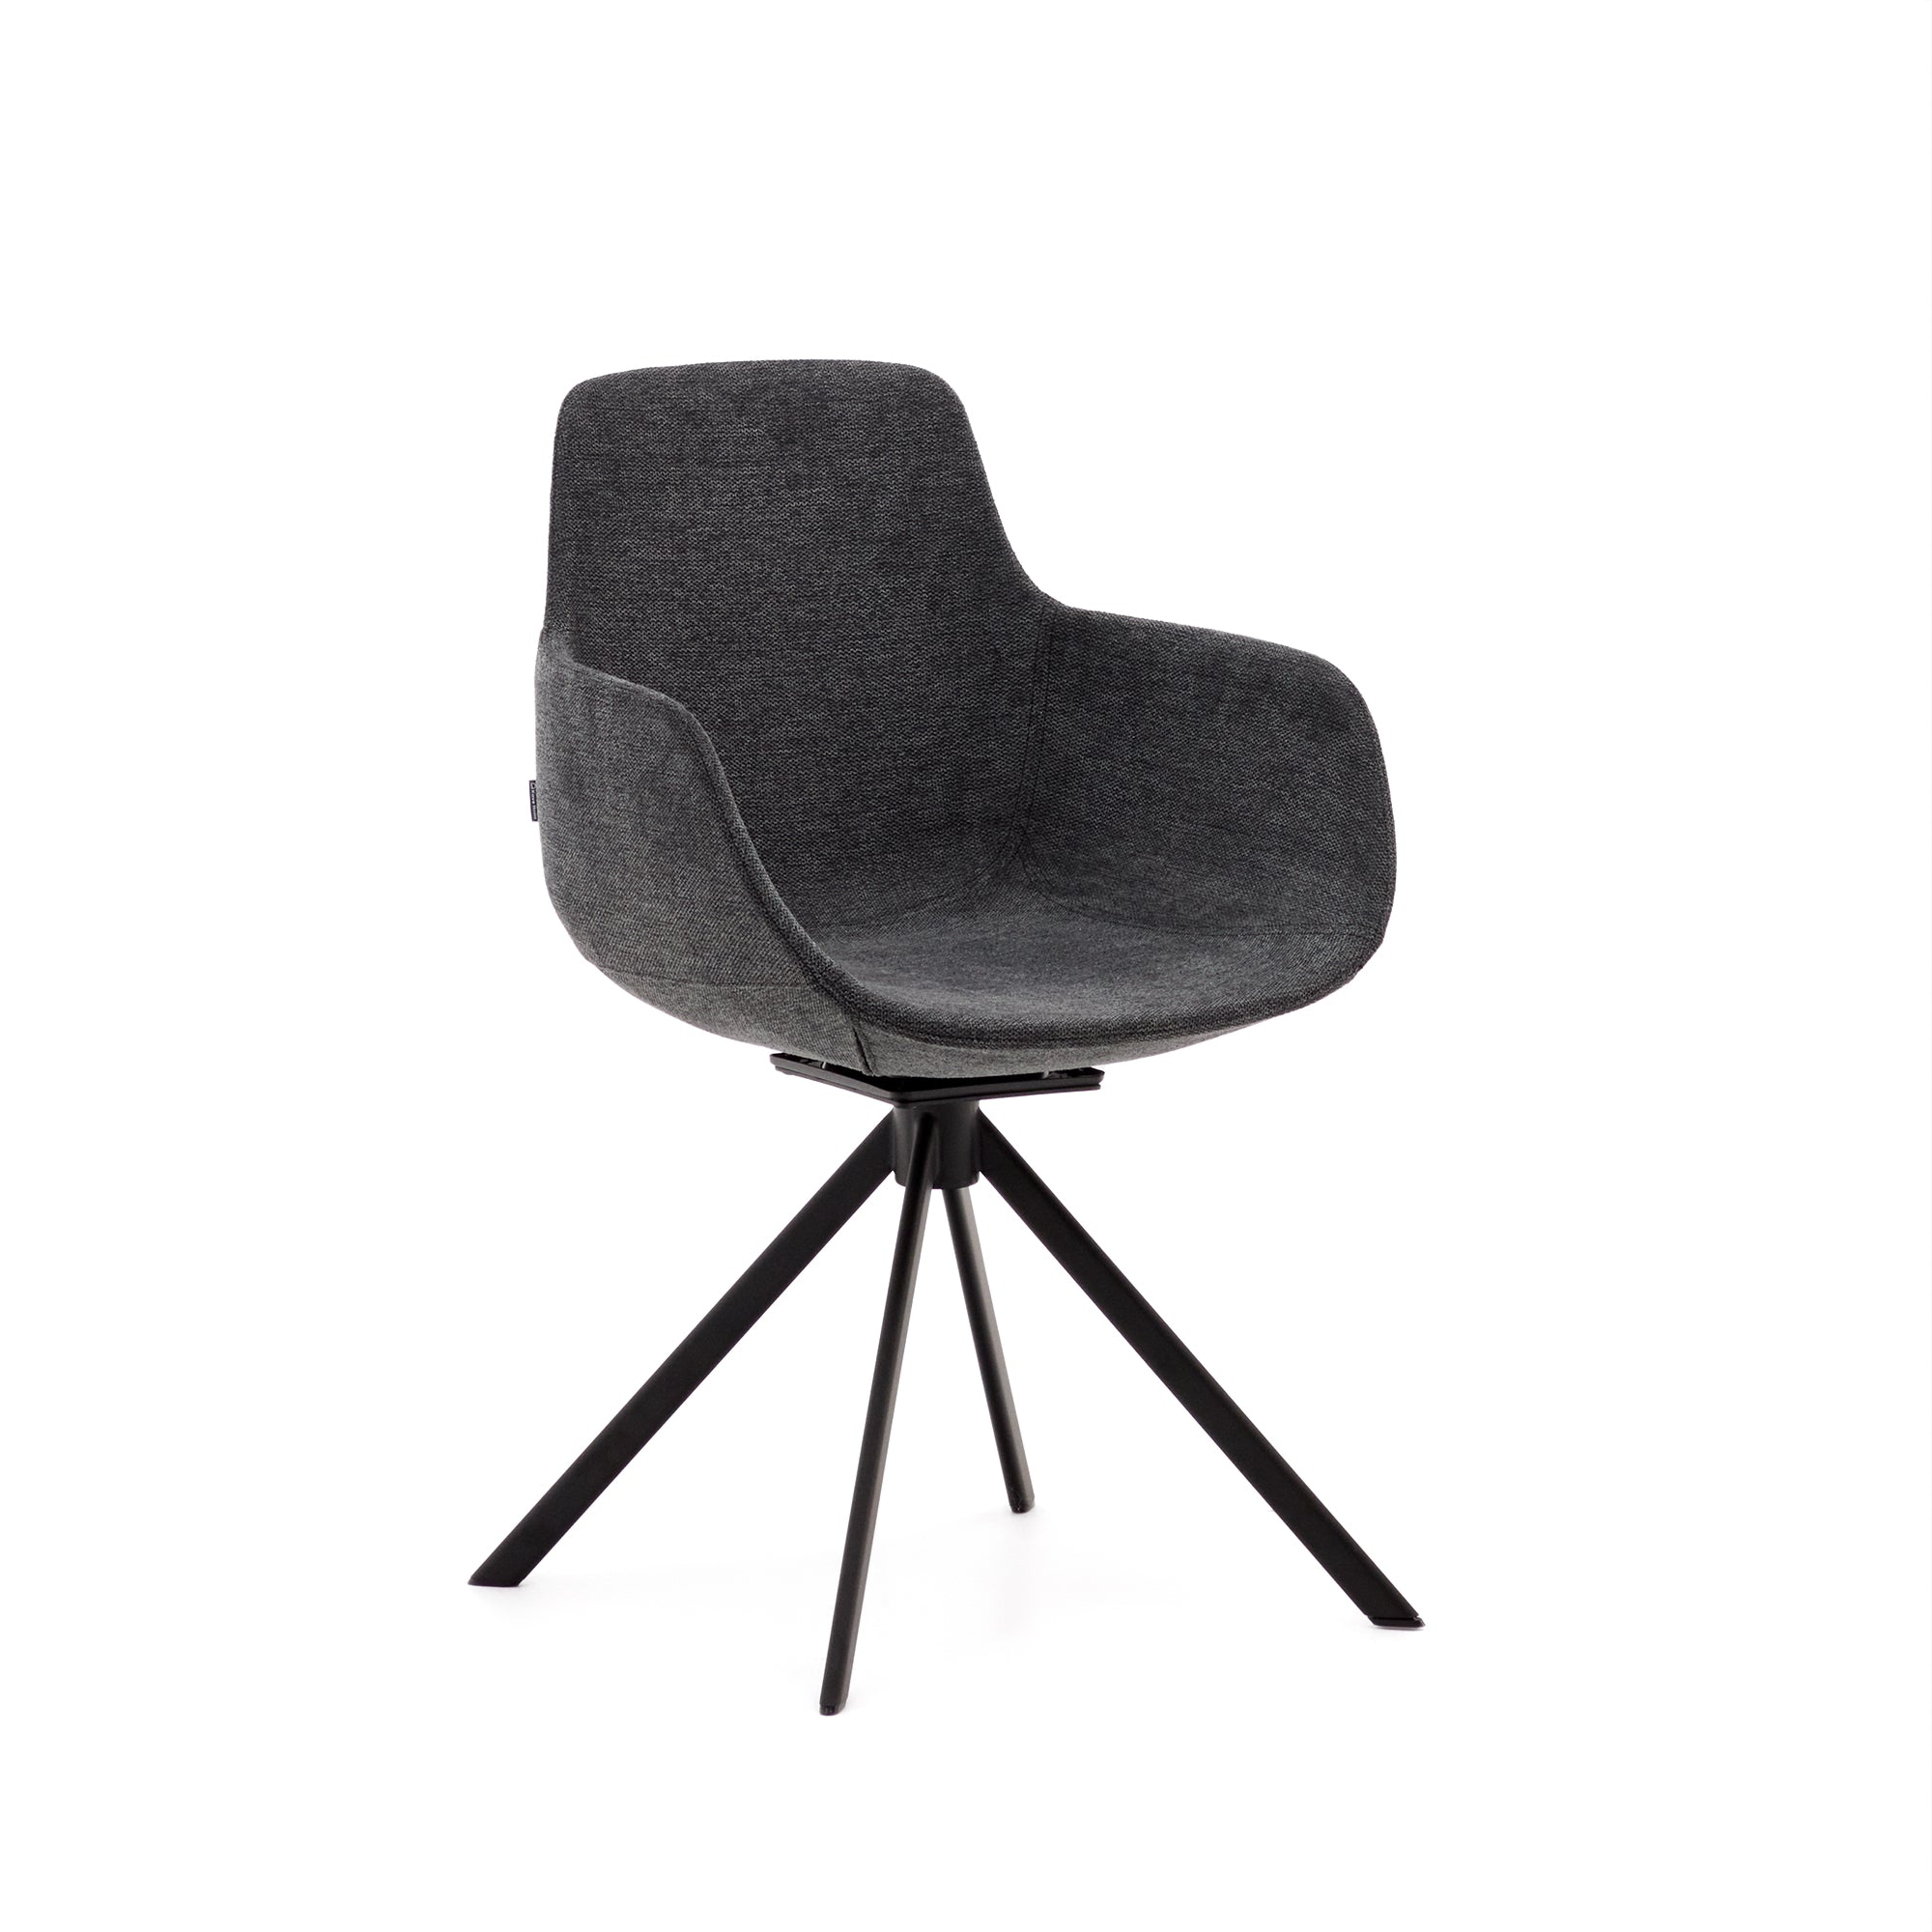 Tissiana self-centring swivel chair in dark grey chenille and matte black aluminium